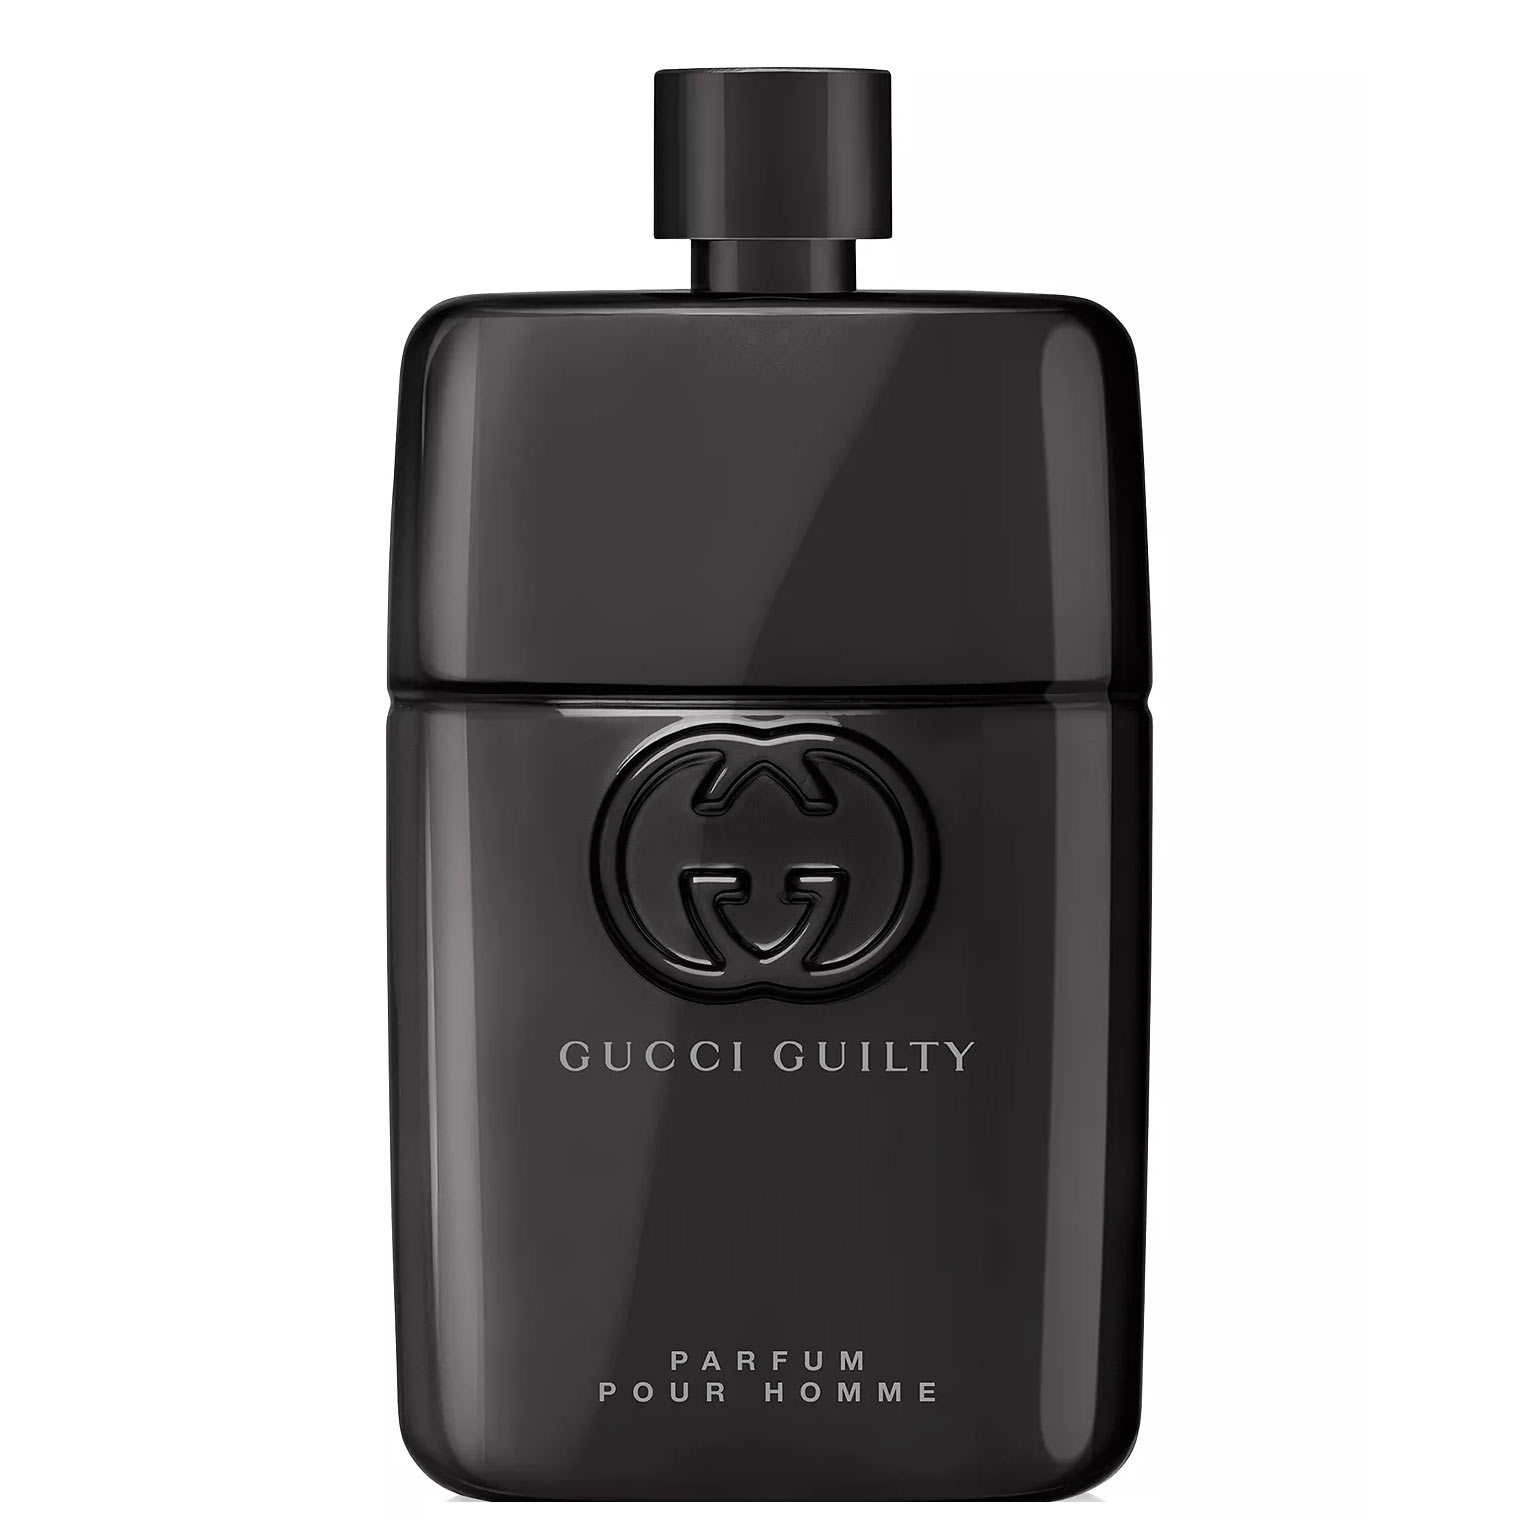 Gucci Guilty Pour Homme Parfum Gucci Image